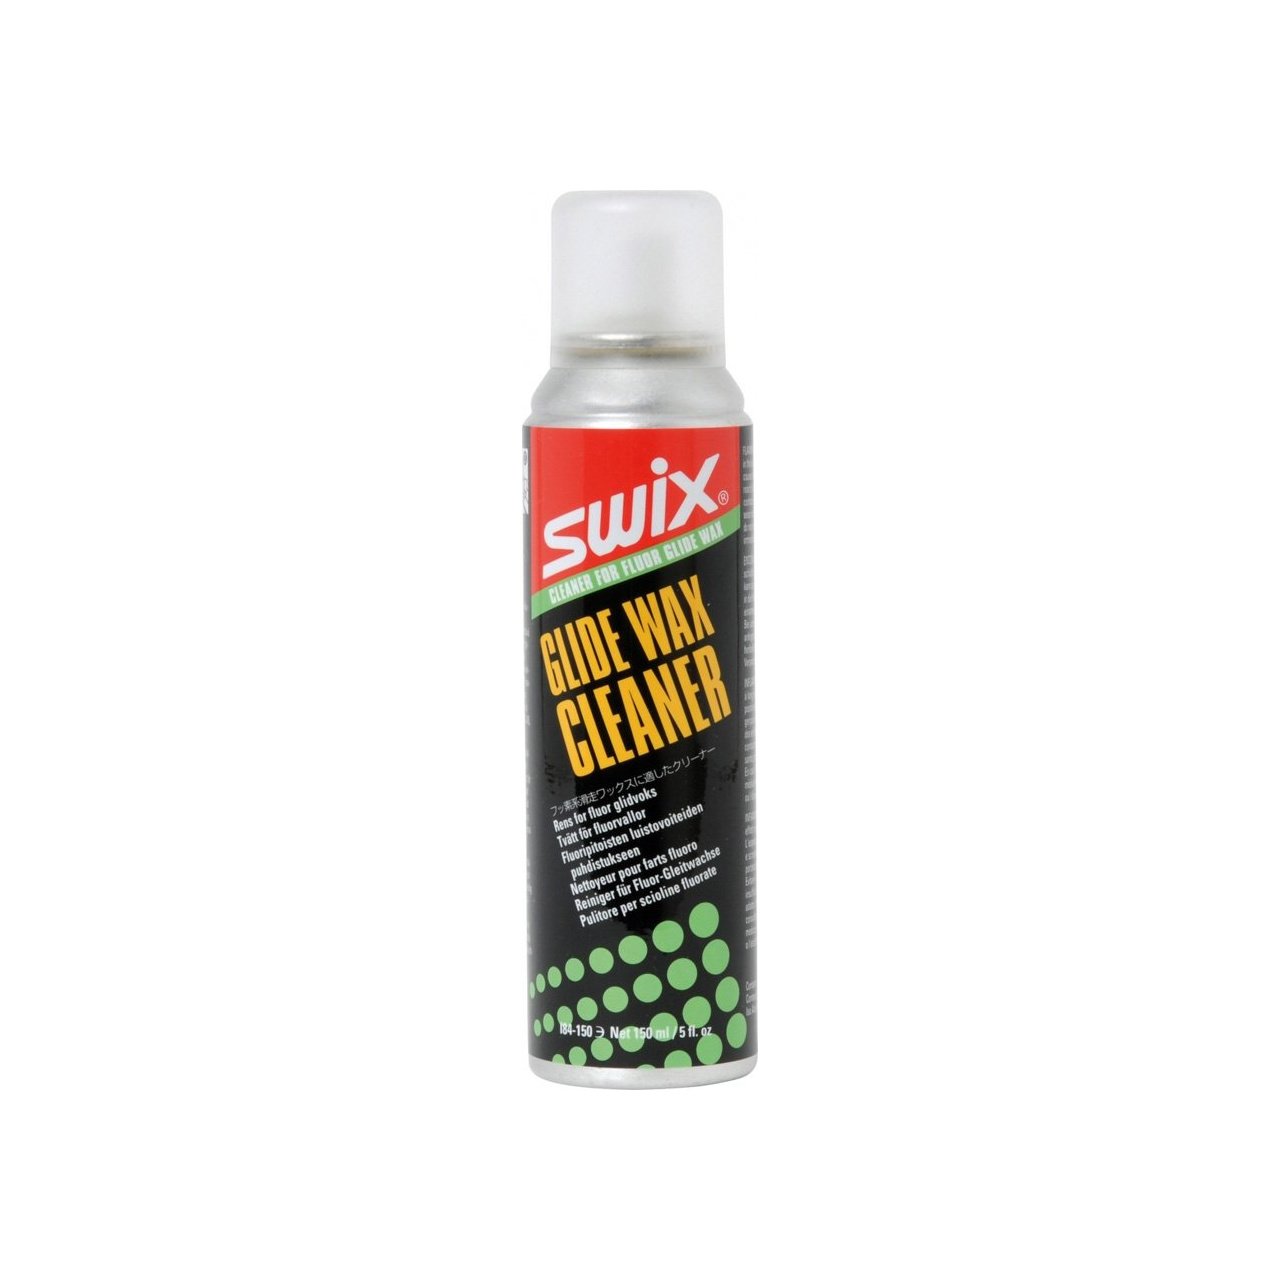 Swix I84-150C Cleaner Glide Wax